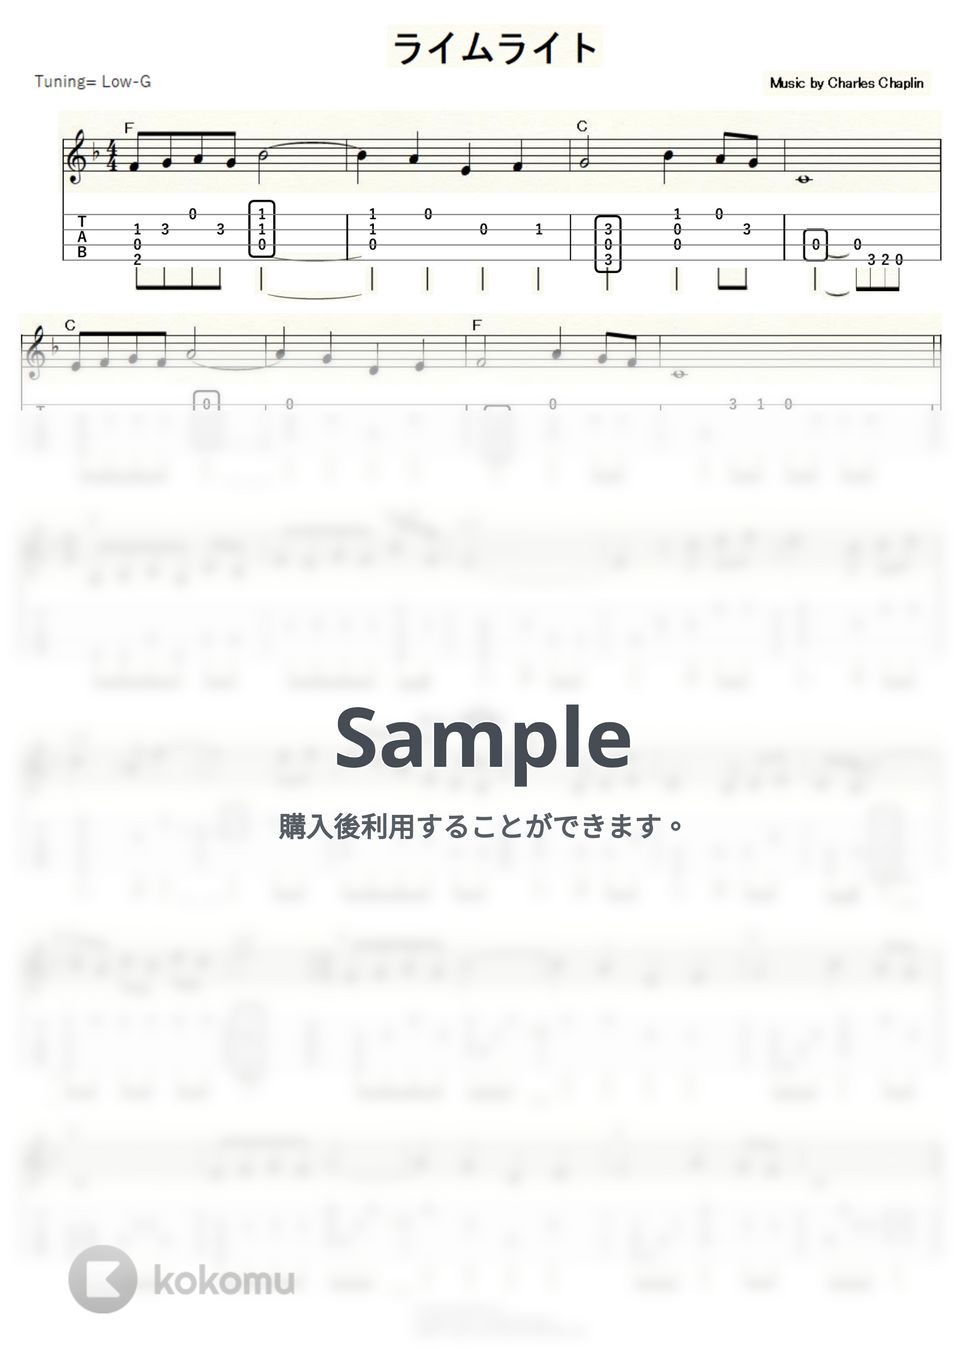 チャールズ・チャップリン - ライムライト～テリーのテーマ/エターナリー～ (ｳｸﾚﾚｿﾛ/Low-G/中級) by ukulelepapa